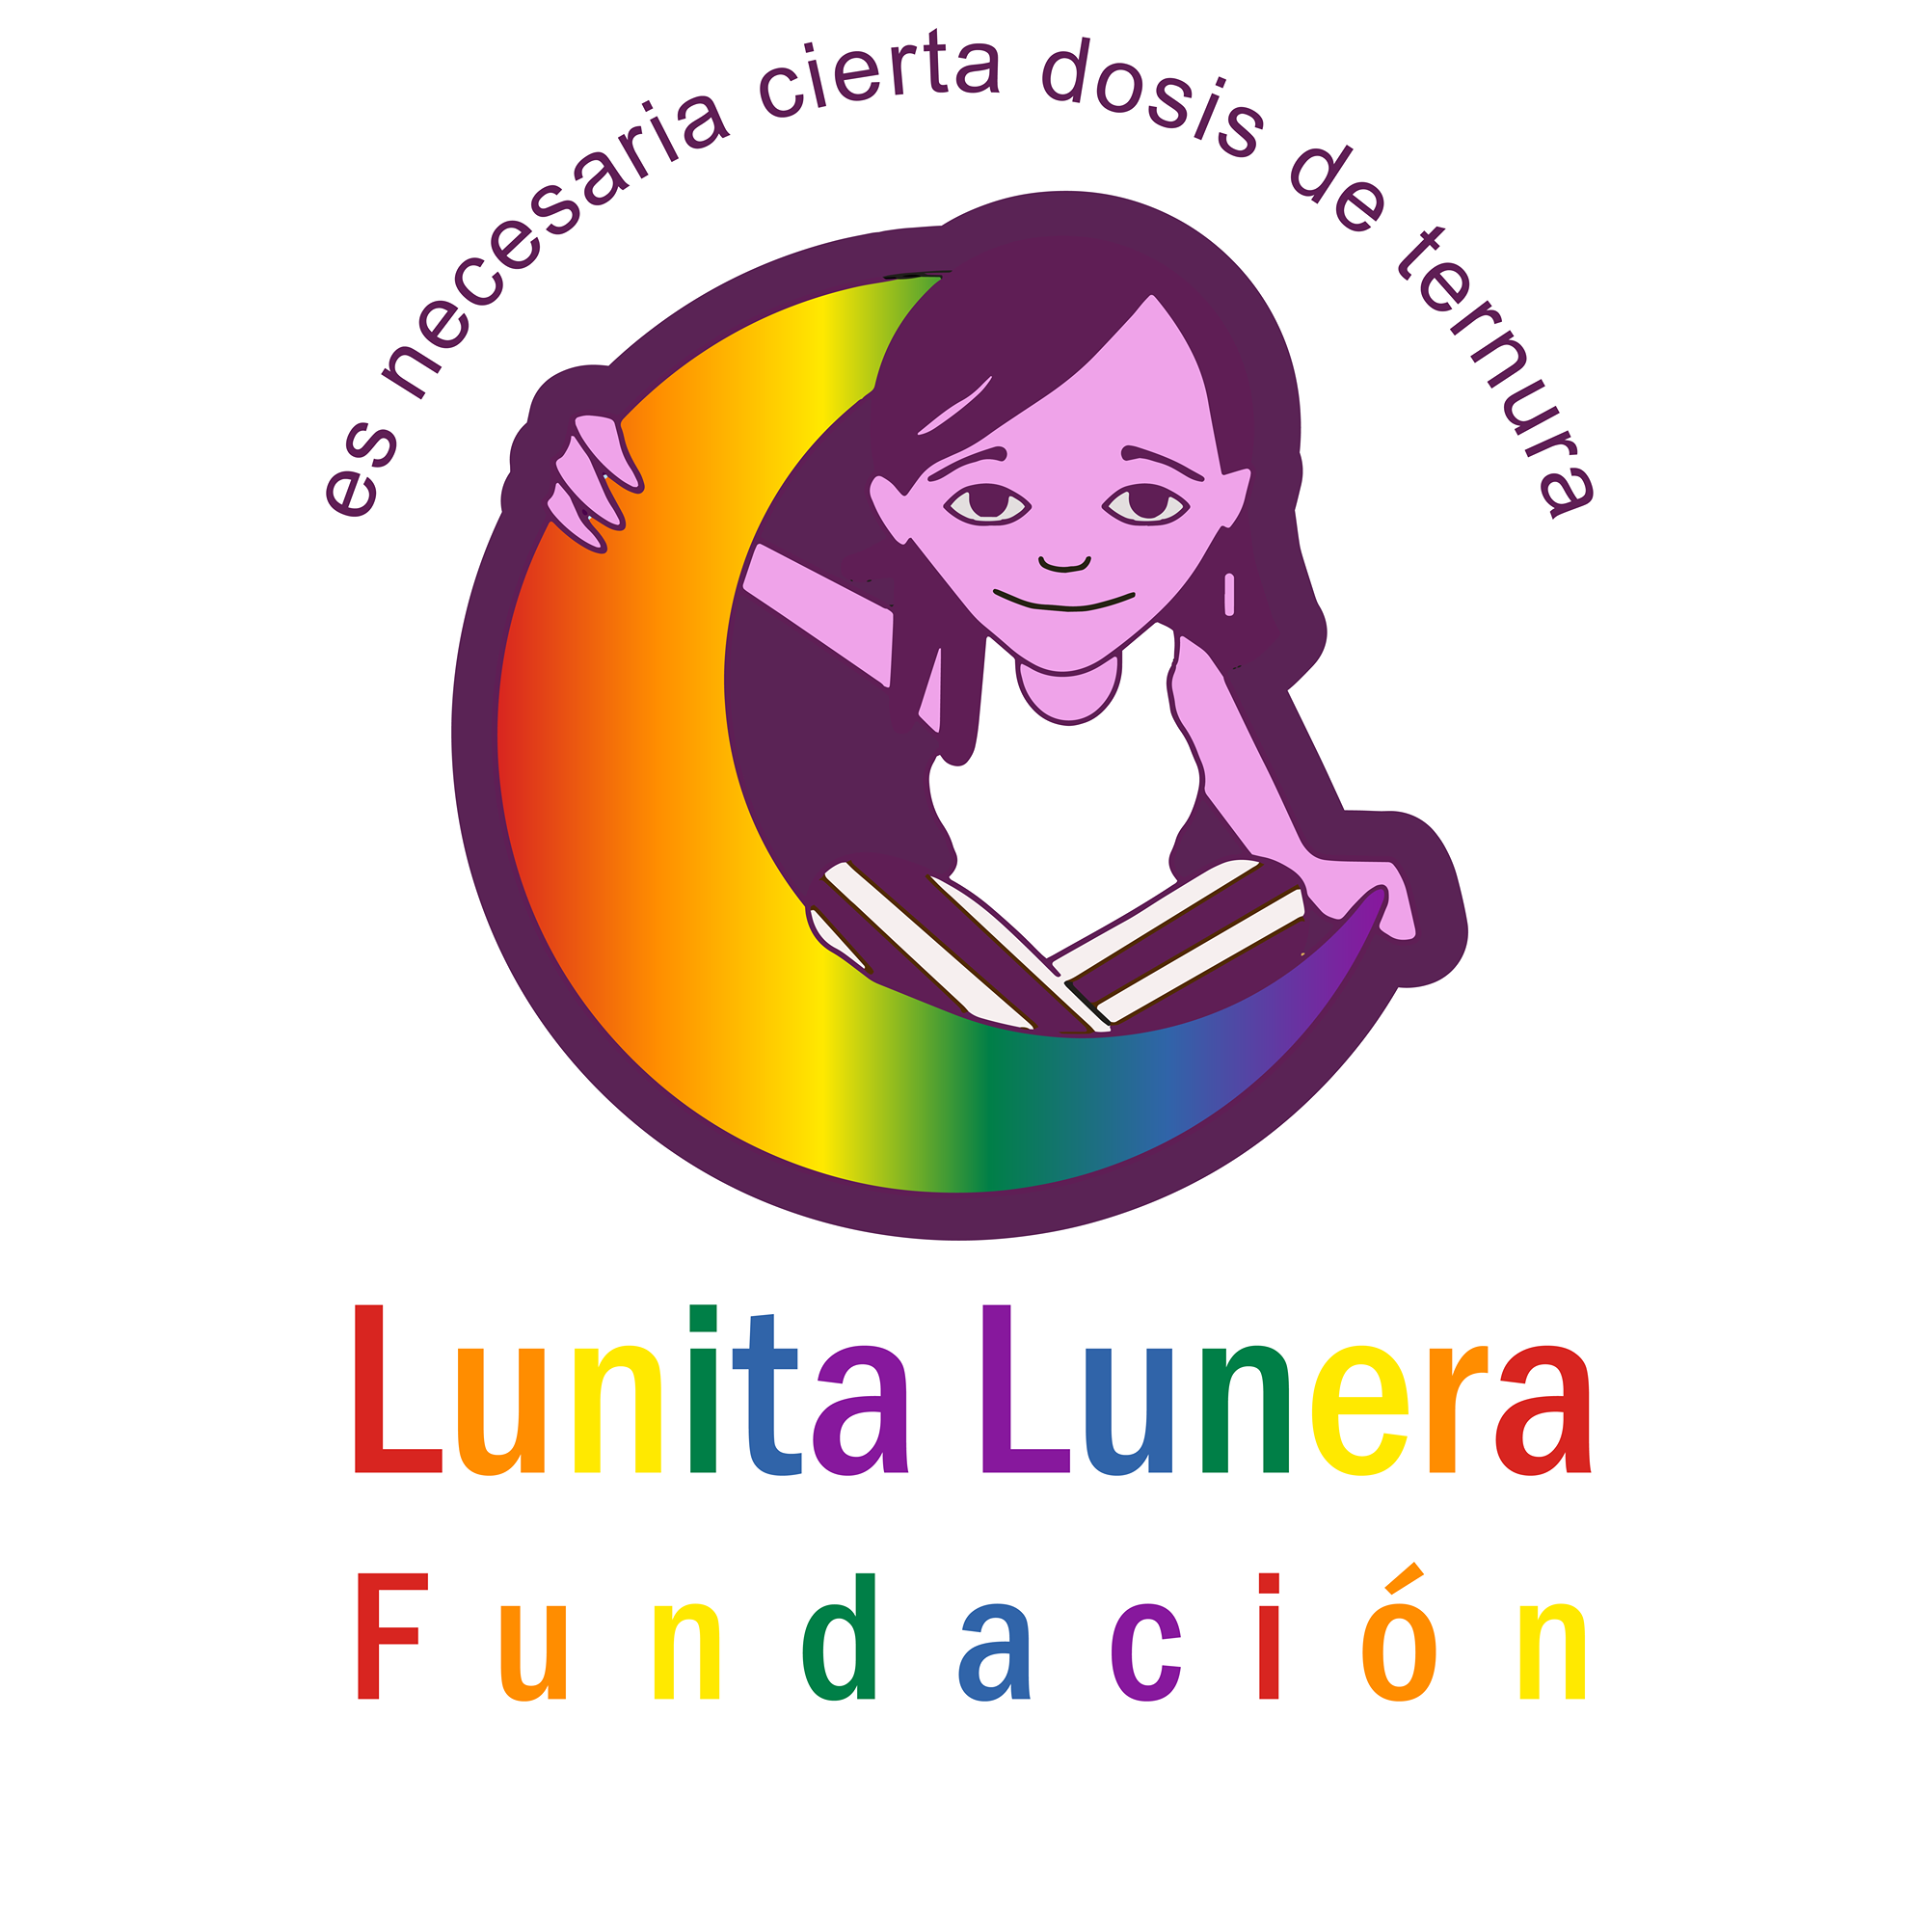 Imagen de fondo de Fundación Luna Lunera